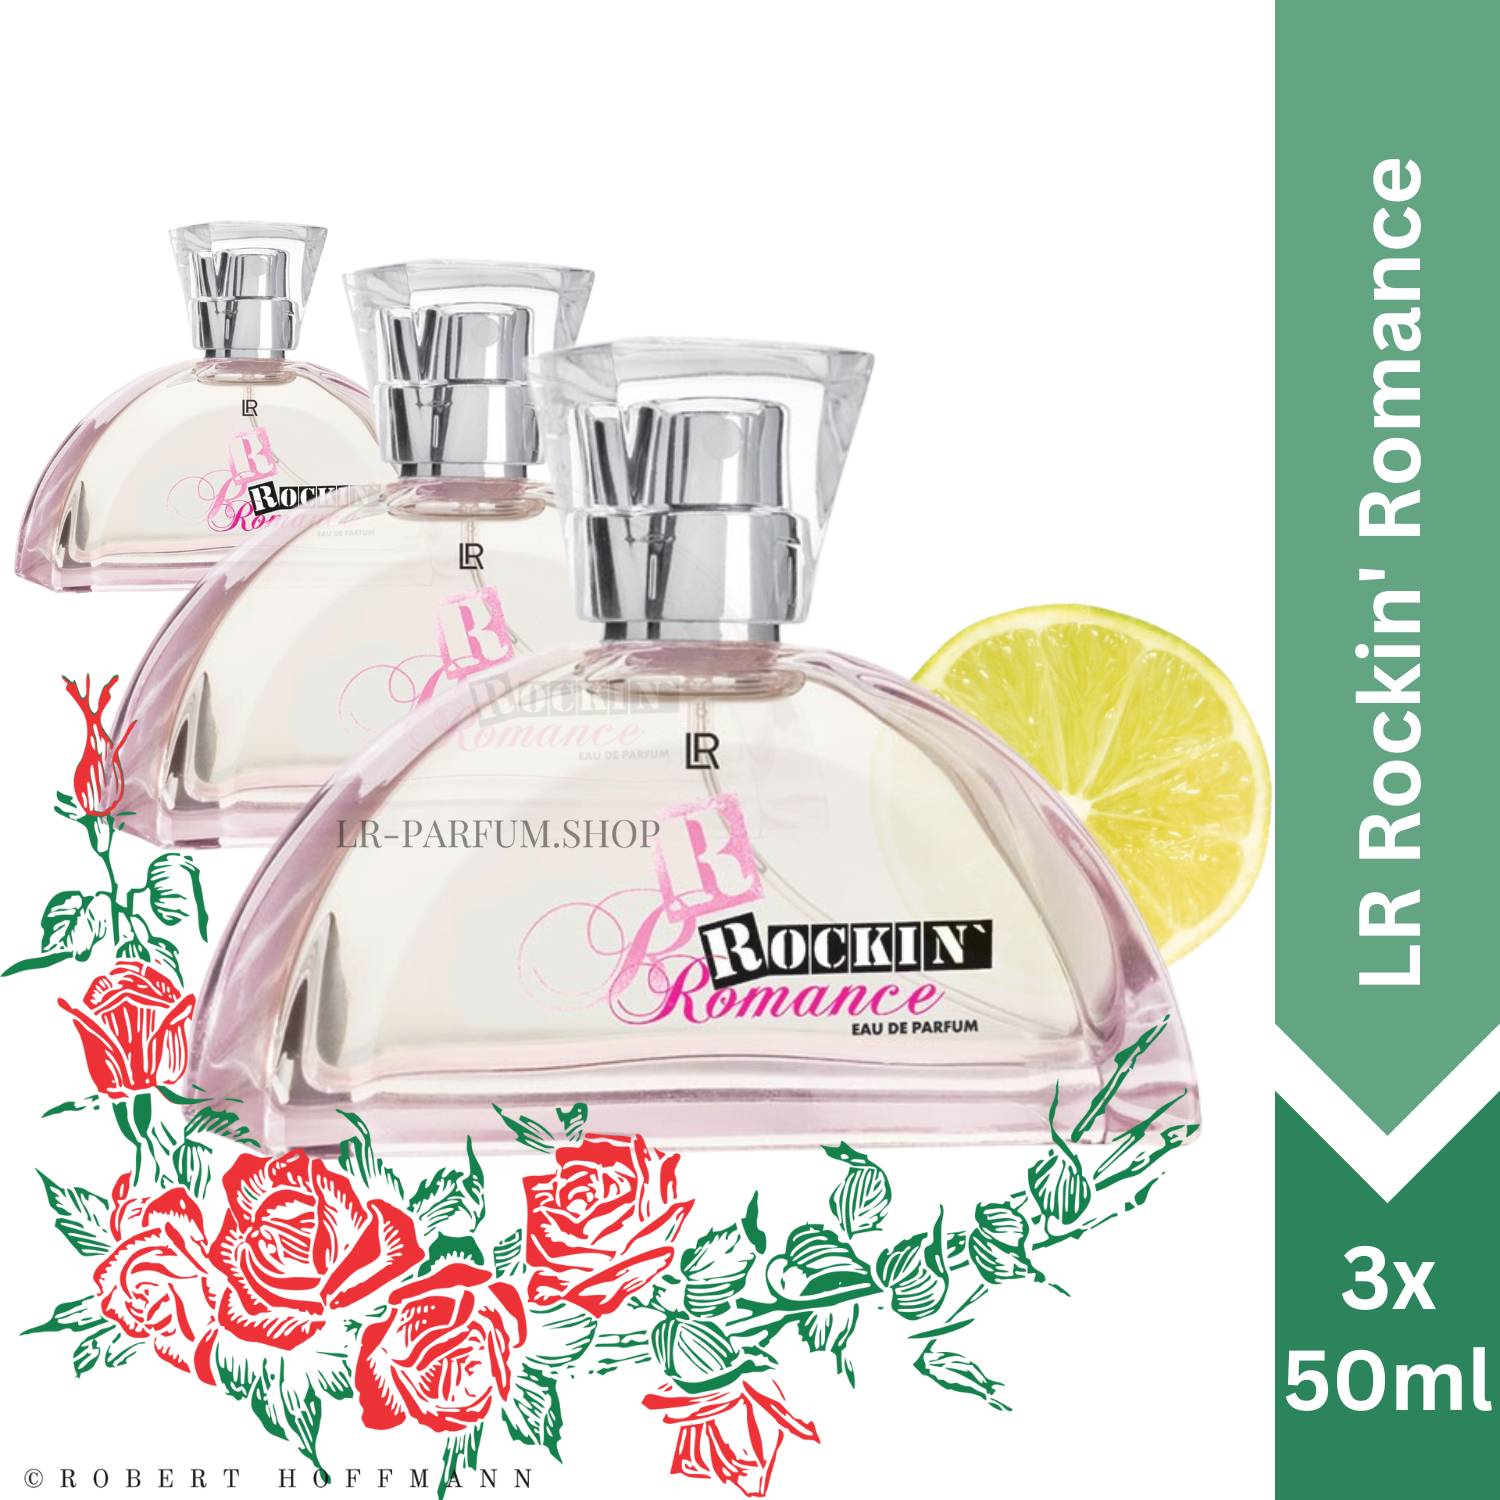 LR Rockin` Romance - Eau de Parfum, 3er Pack (3x50ml) - LR-Parfum.shop